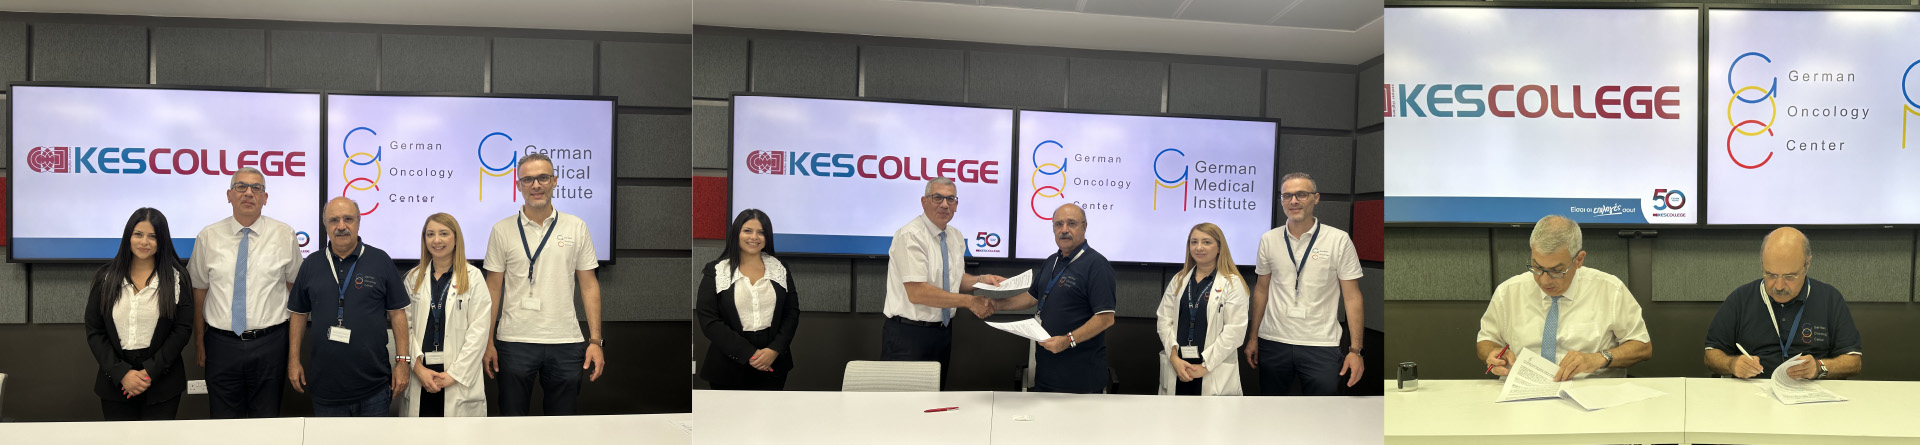 Υπογραφή Μνημονίου Συνεργασίας μεταξύ Γερμανικού Ογκολογικού Κέντρου και KES College